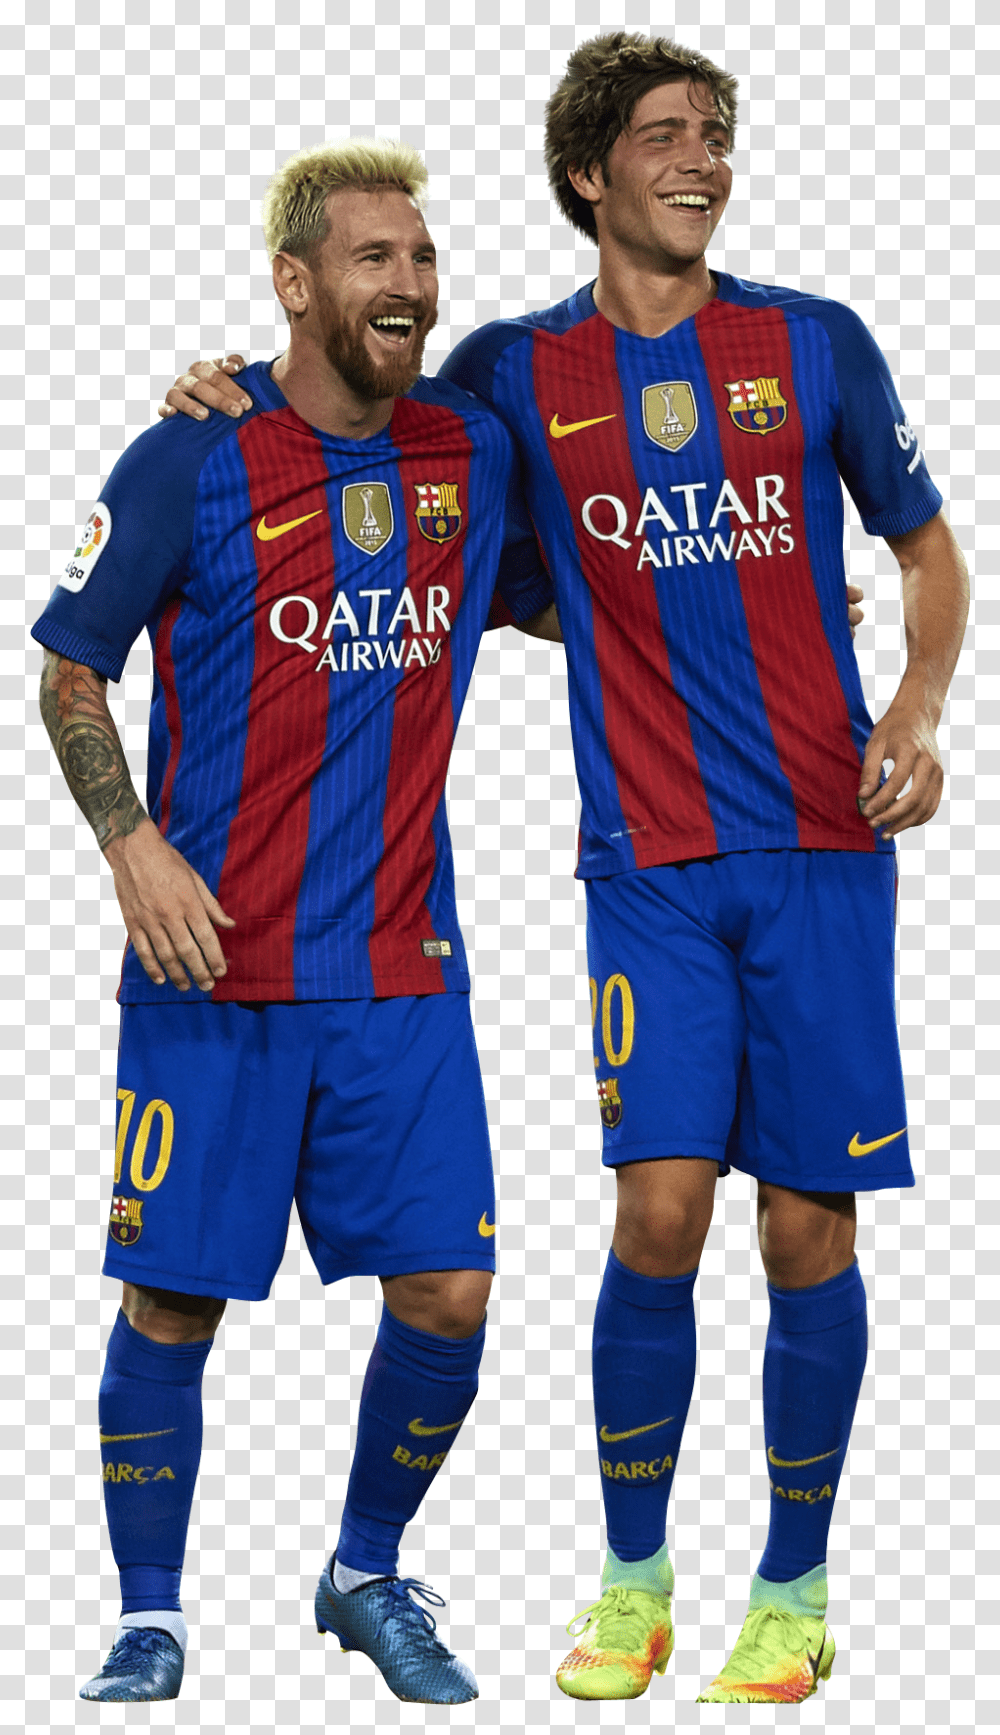 Lionel Messi Amp Sergi Robertorender Sergi Roberto And Messi 2018, Person, Shirt, Sphere Transparent Png